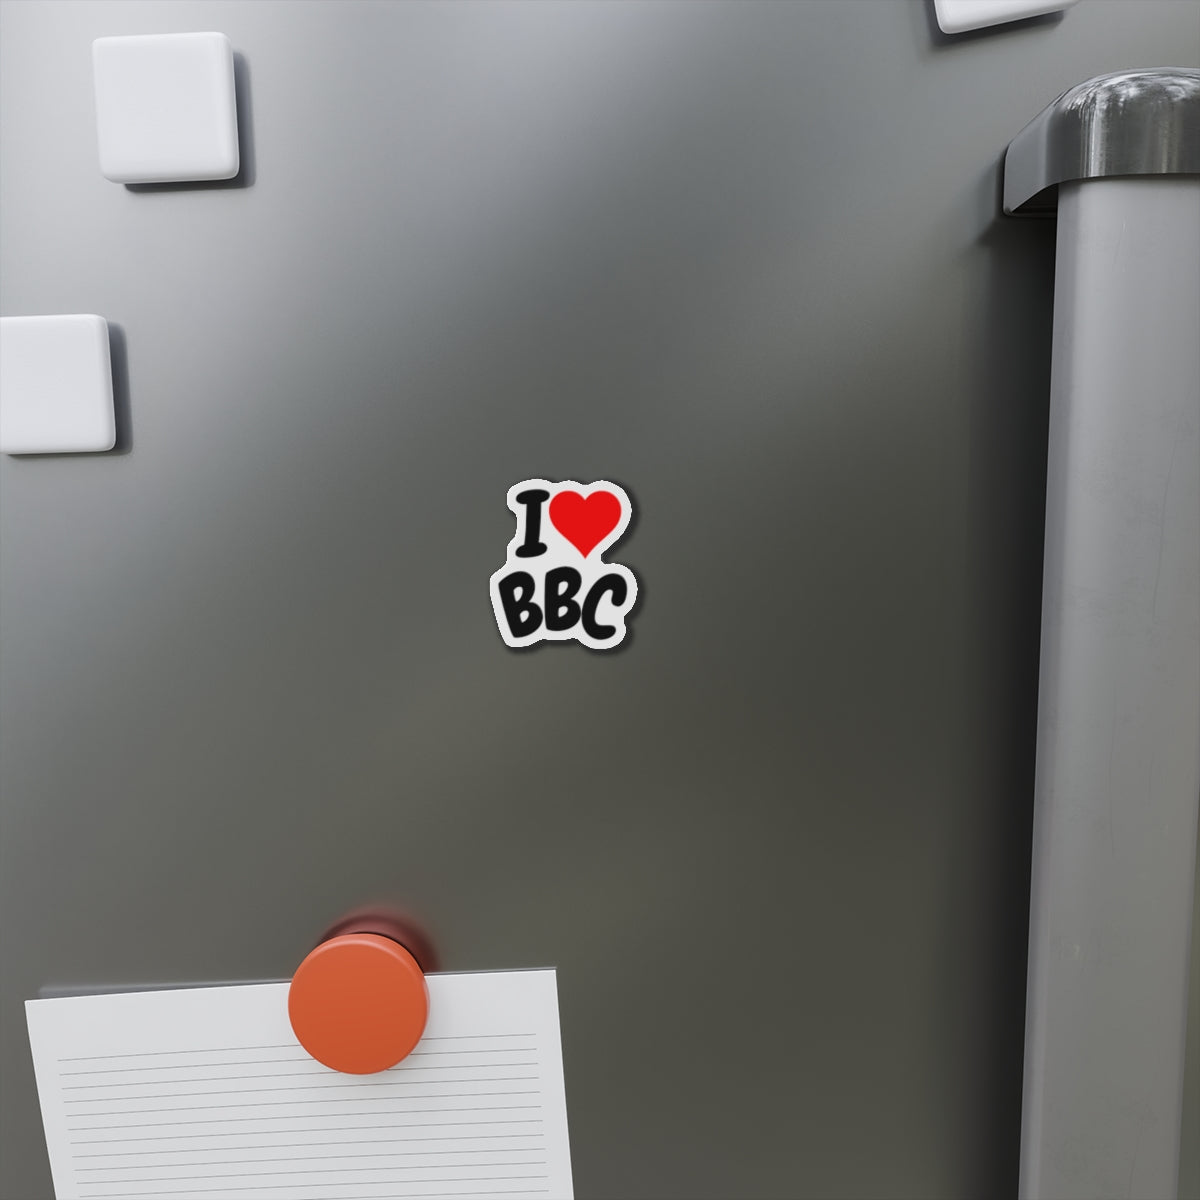 Juucie | "I Love BBC" Die-Cut Magnets - Juucie